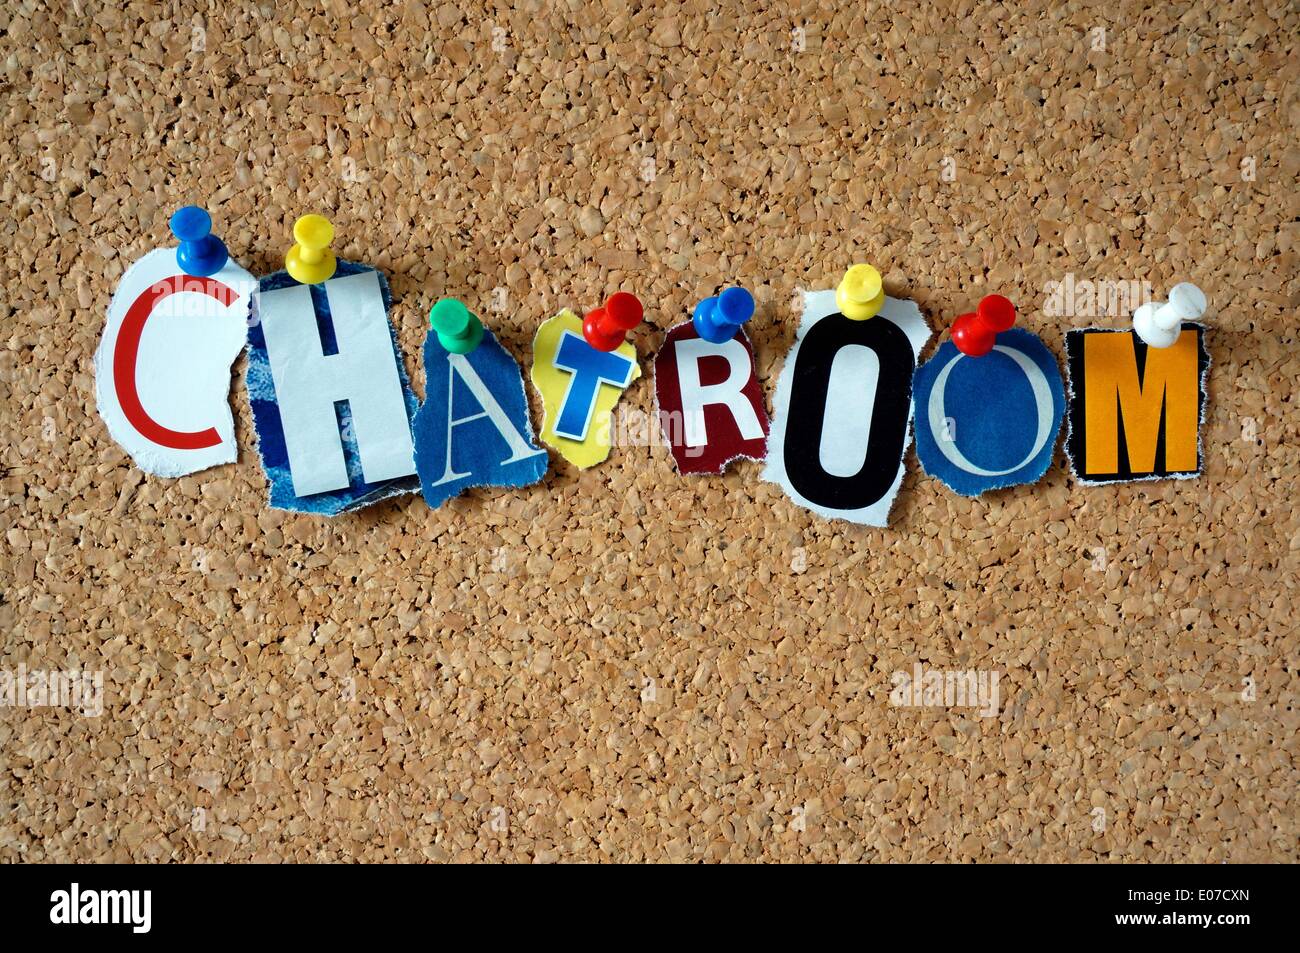 Illustrazione - la parola 'Chatroom' fatta di lettere ritagliate sui giornali è appesa su una bacheca, 22 novembre 2013. Fotoarchiv für Zeitgeschichte - SENZA FILI Foto Stock